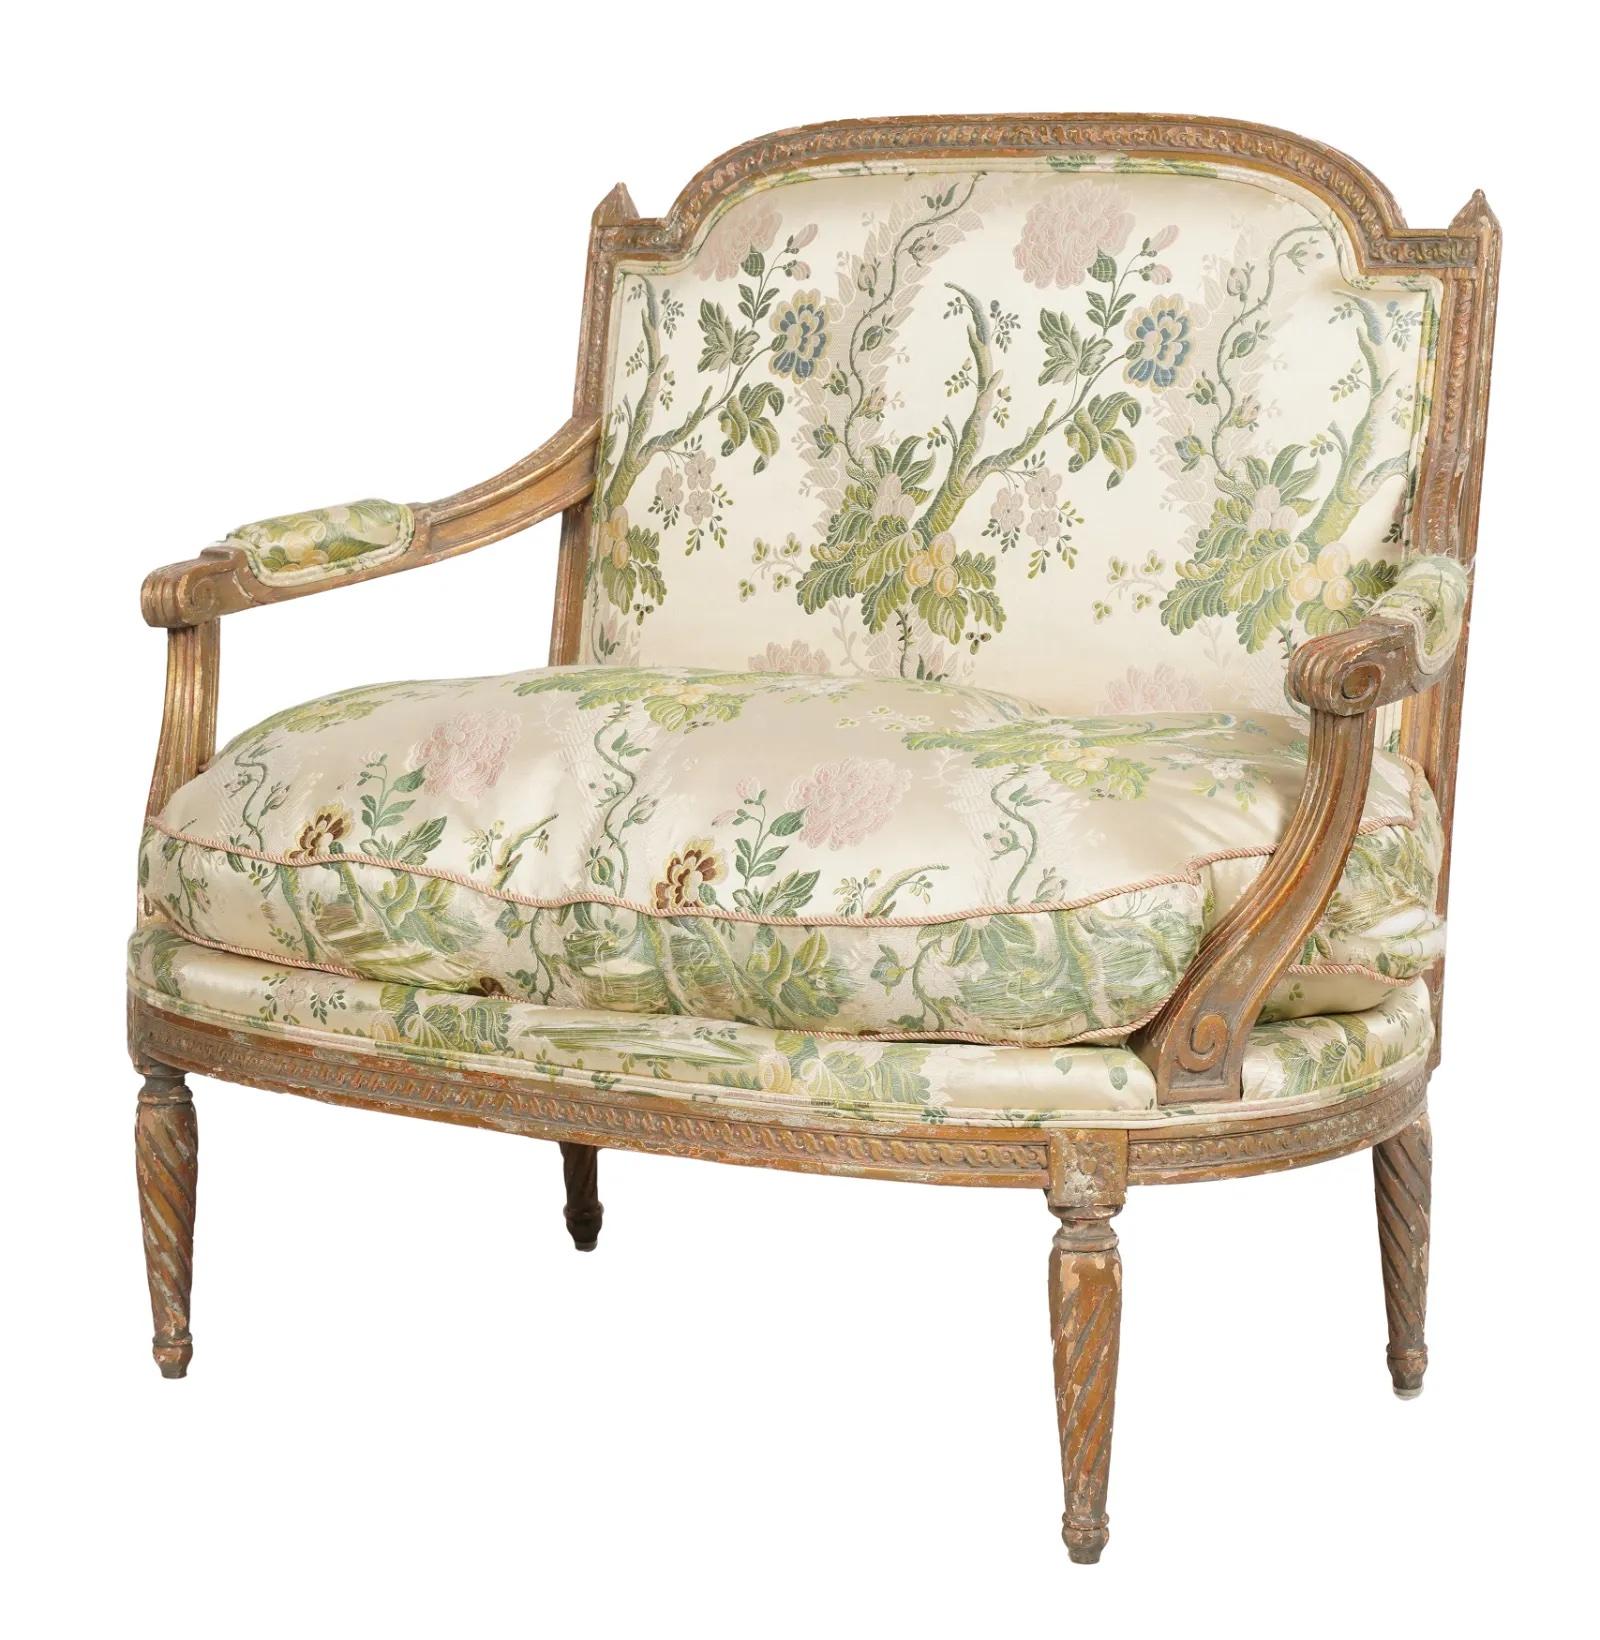 Schönes französisches Sofa im Louis-XVI-Stil aus vergoldetem Holz aus dem späten 19. Jahrhundert, das noch Reste der ursprünglichen Vergoldung aufweist. Aufwändige handgeschnitzte Details im gesamten Rahmen. Vintage Seidendamast Polsterung hat in